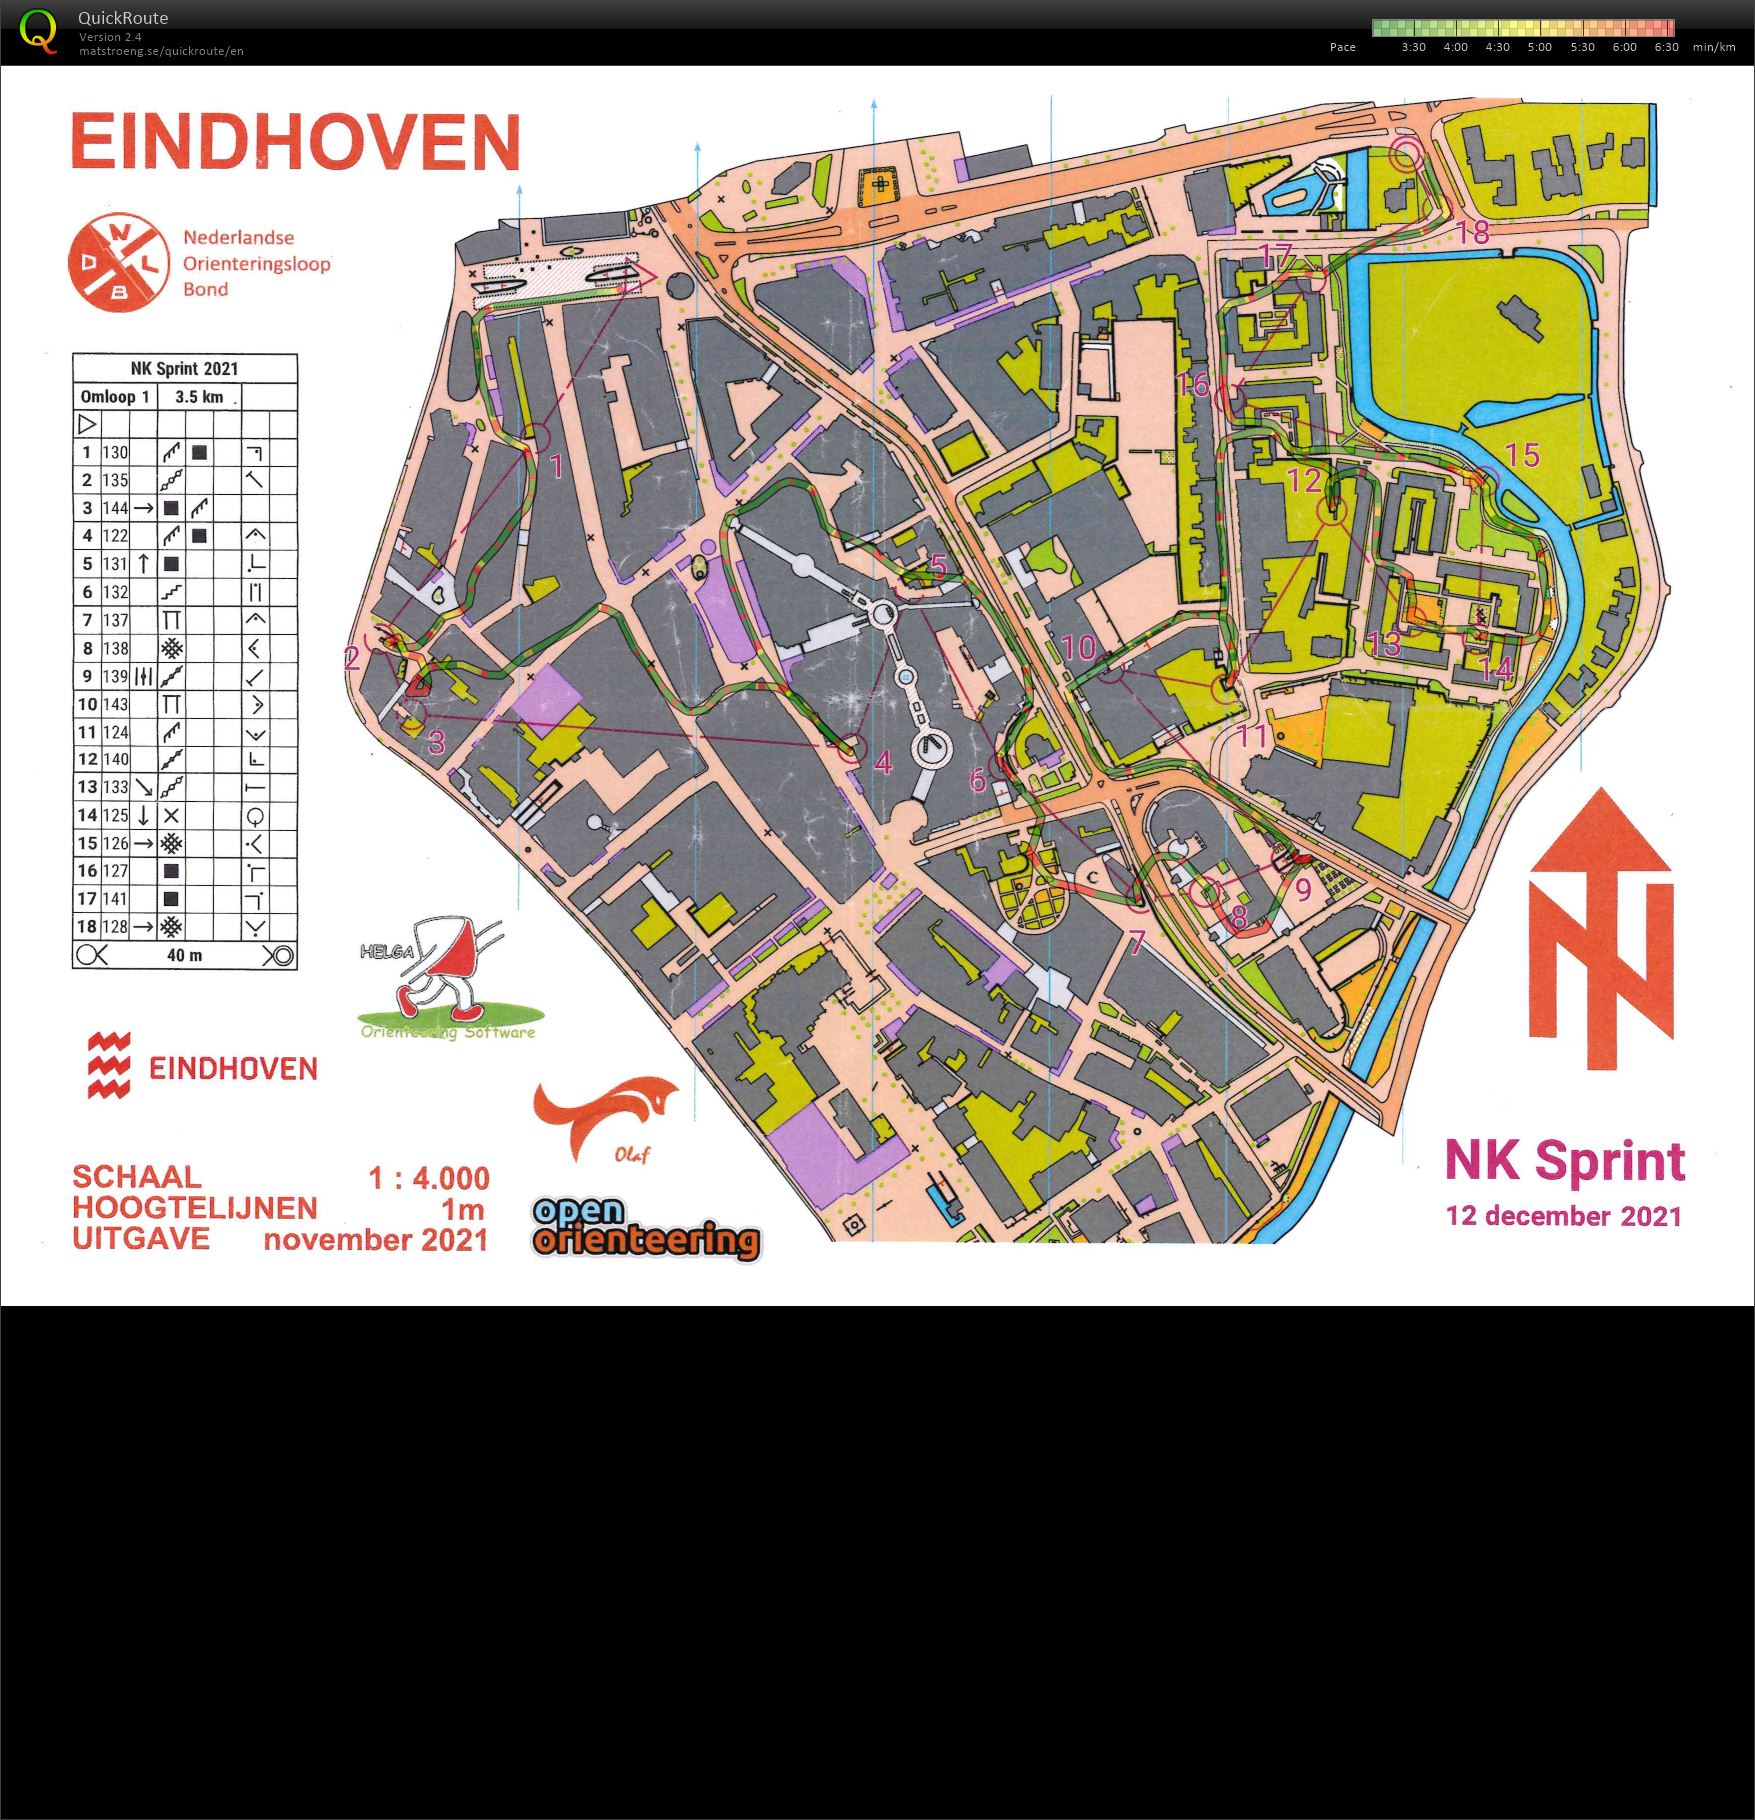 NK Sprint Eindhoven (12-12-2021)